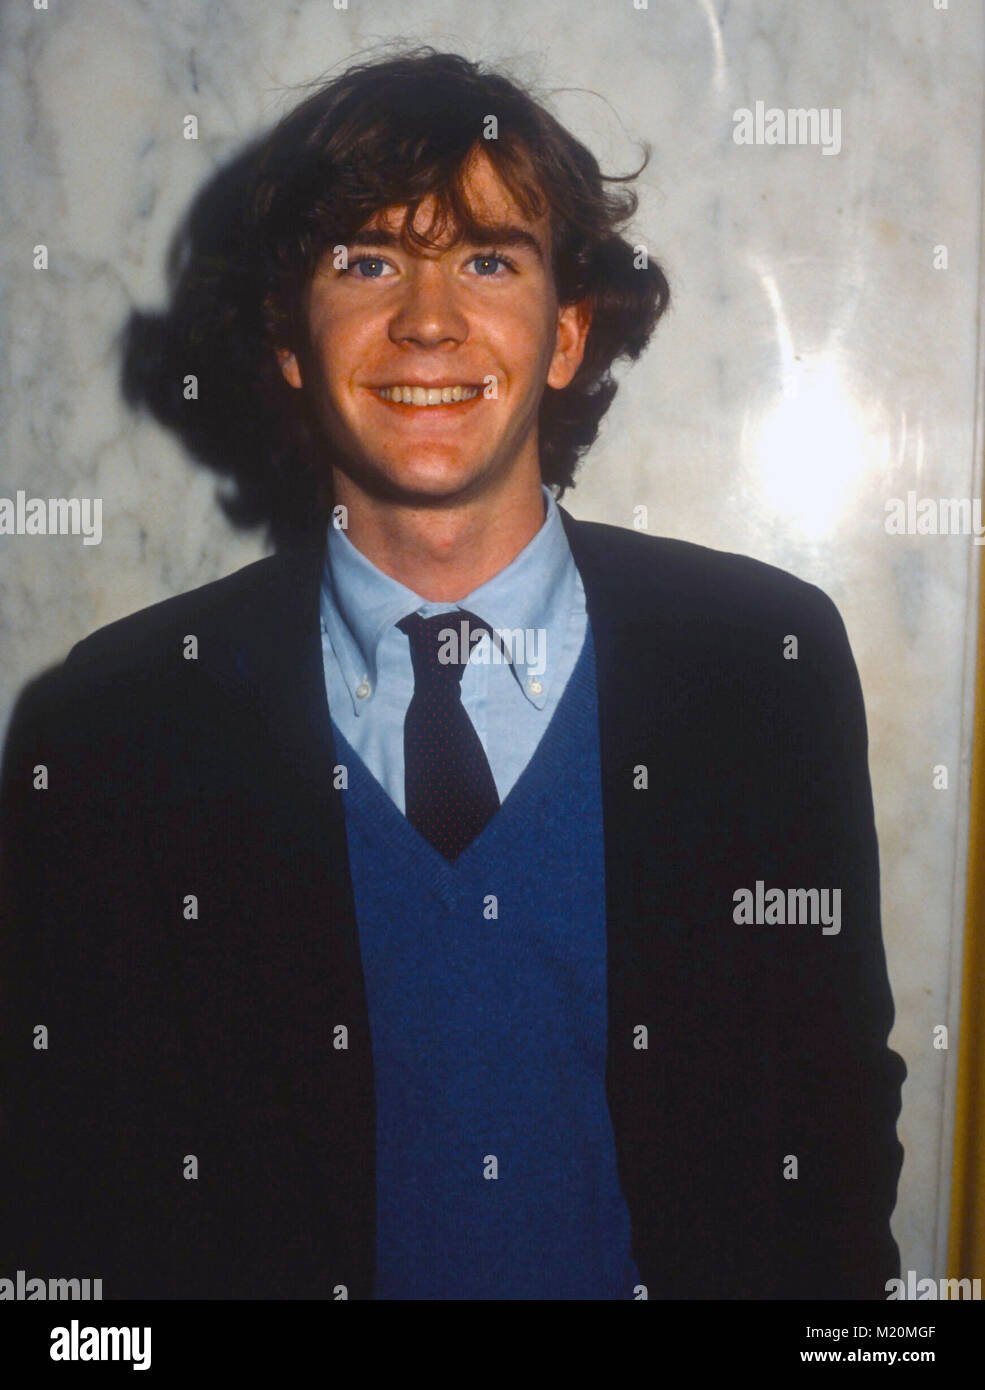 LOS ANGELES, CA - 14 dicembre: l'attore Timothy Hutton assiste il Golden Apple Awards sul dicembre 14, 1980 a Los Angeles, California. Foto di Barry re/Alamy Stock Photo Foto Stock